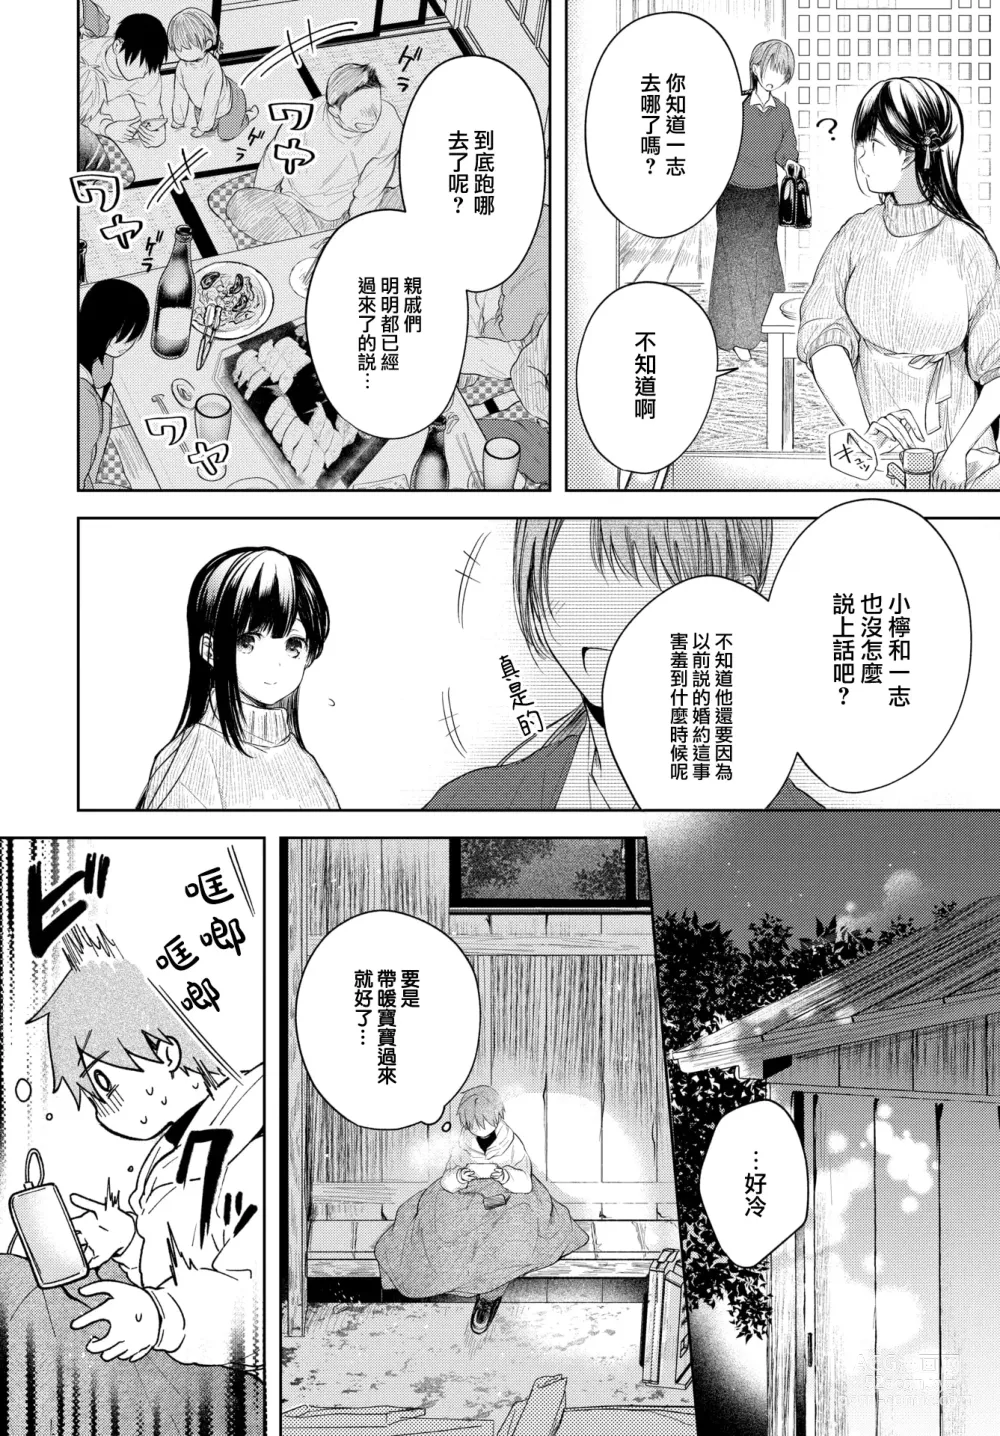 Page 5 of manga Ii mo Amai mo Kimi to Dake.